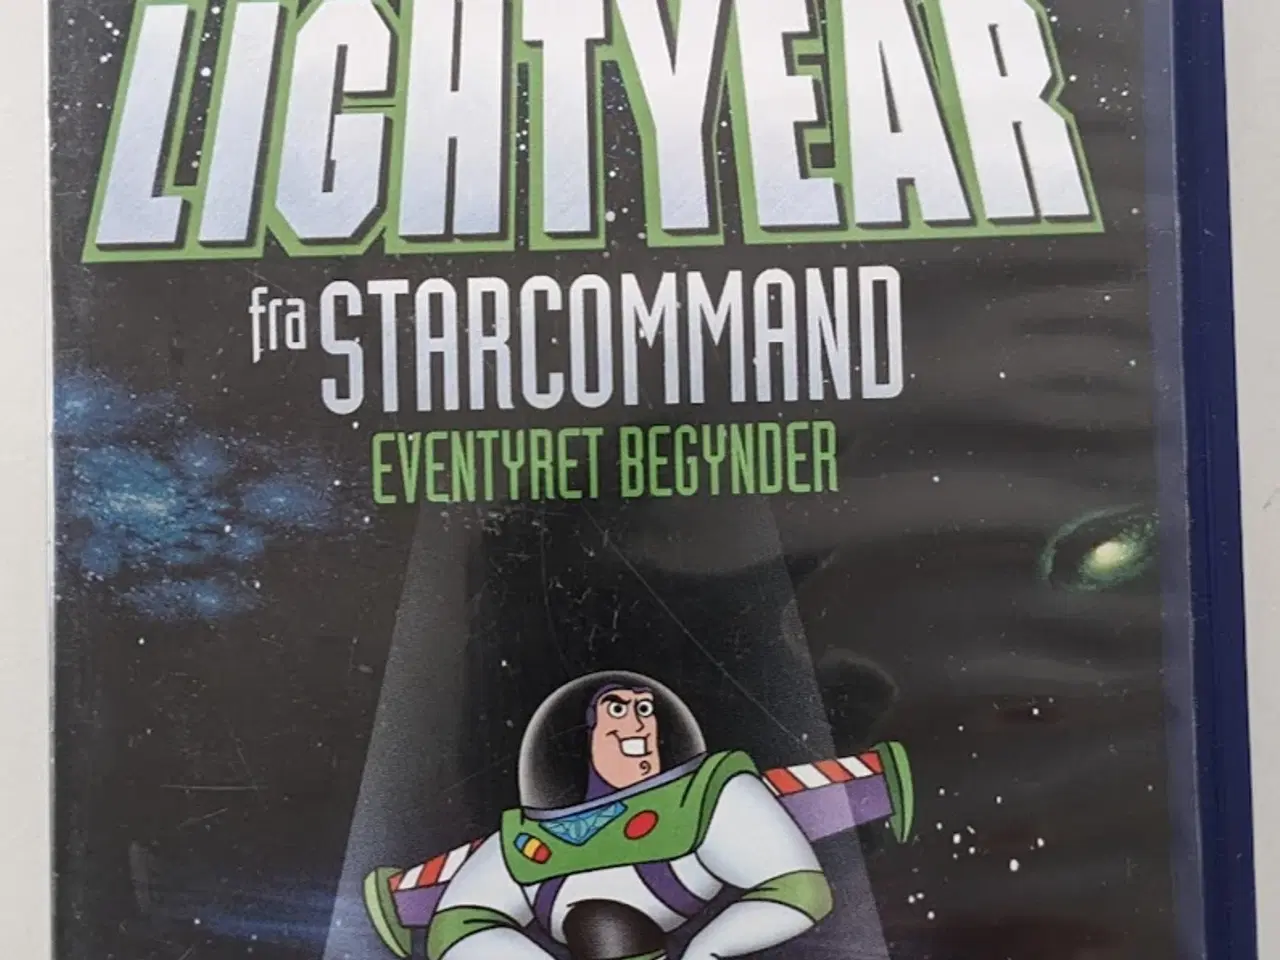 Billede 1 - VHS - Buzz Lightyear fra Starcommand